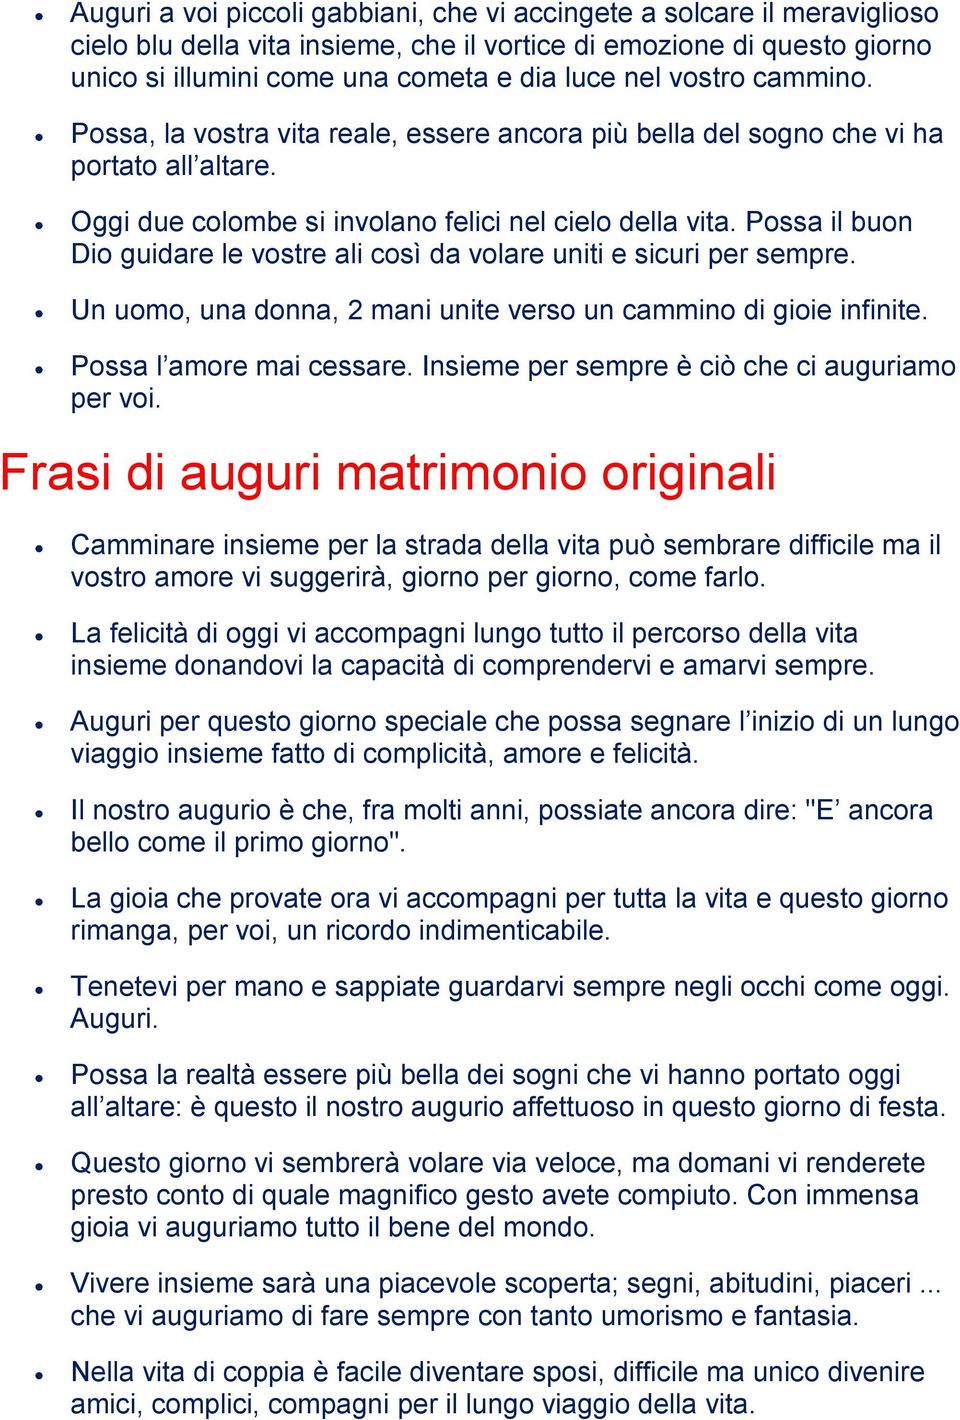 Frasi Di Matrimonio Con Felicitazioni Pdf Free Download